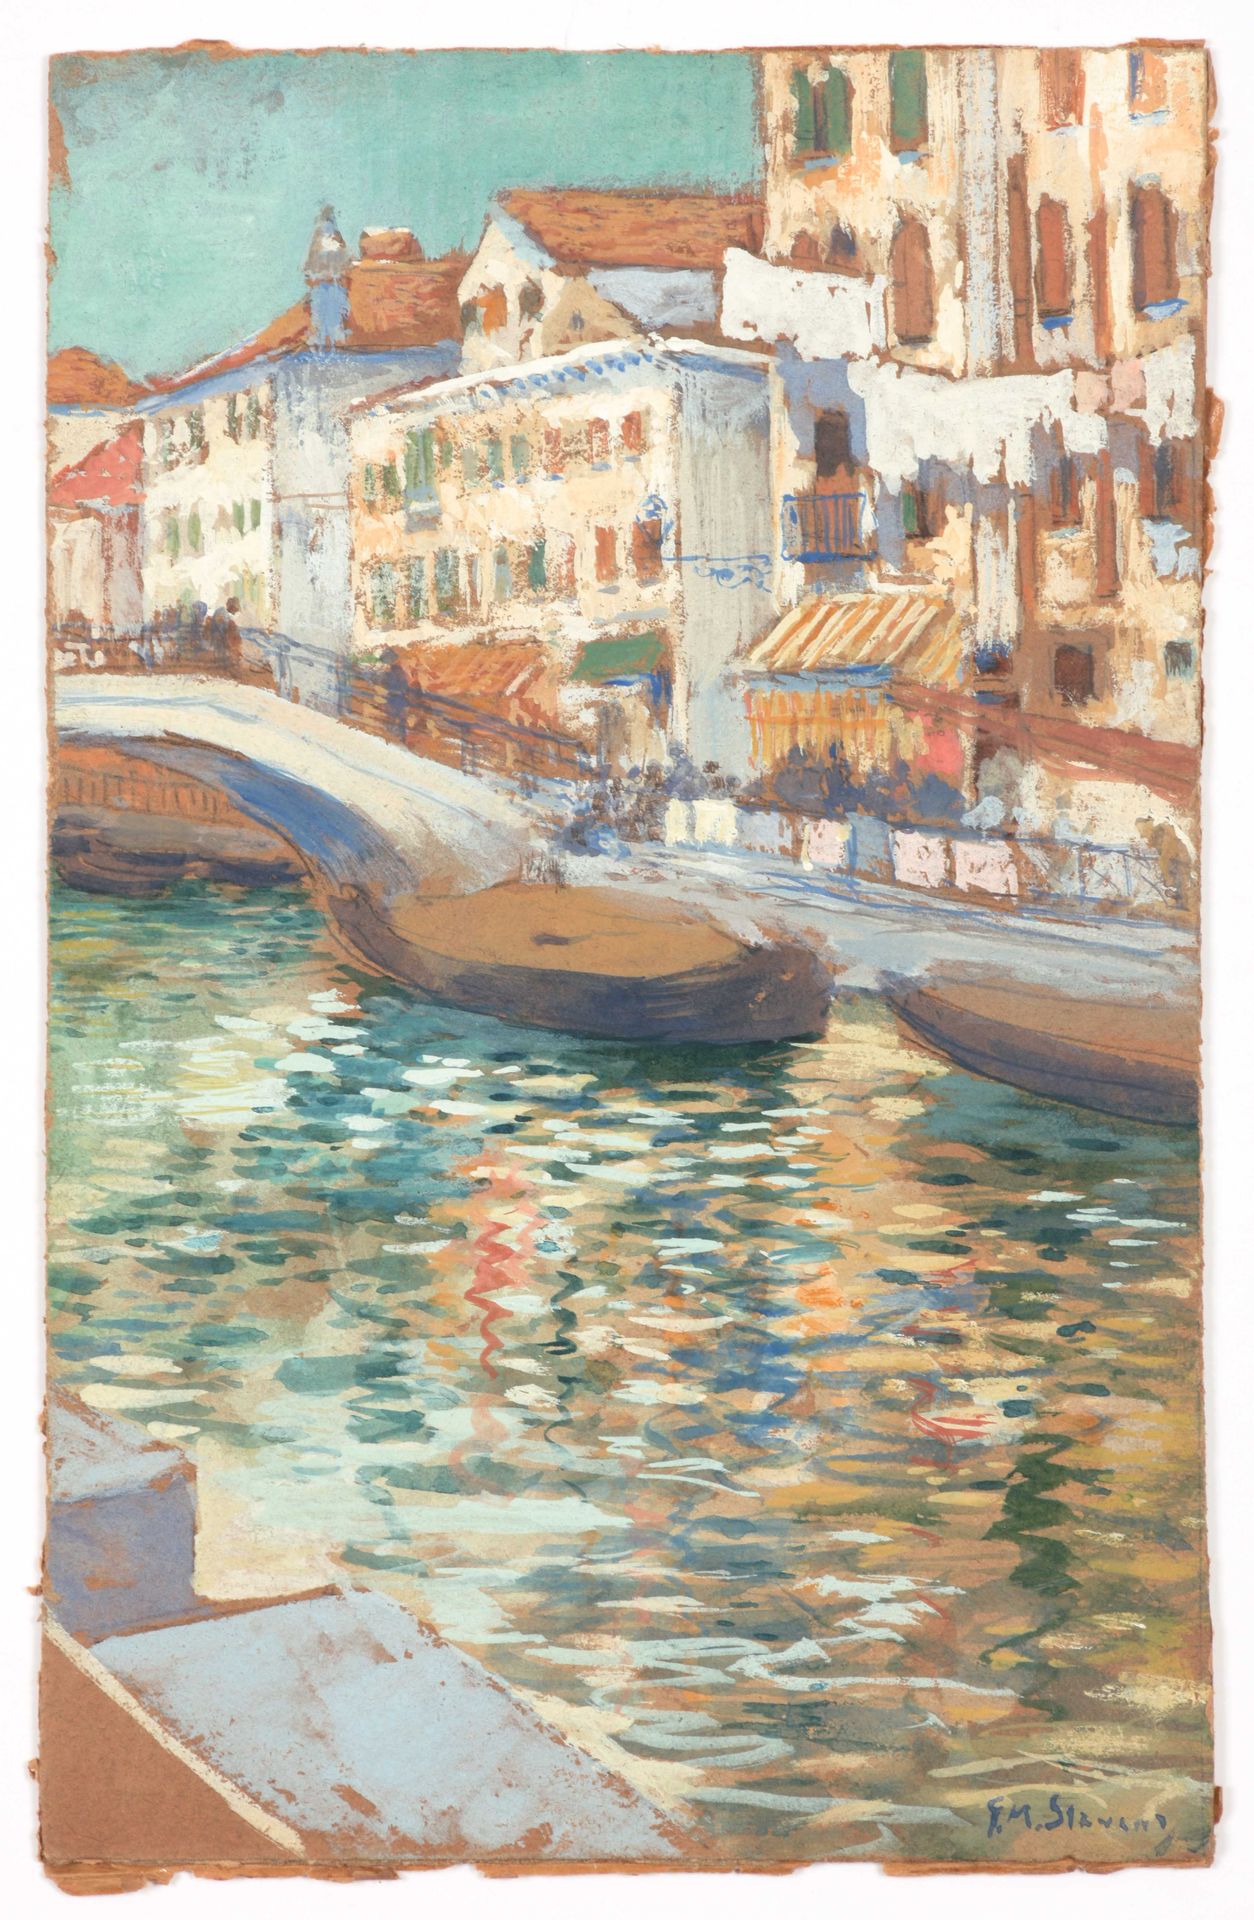 STEVENS, G. M. (1861-1946) 威尼斯的小景观

水彩/水粉画（20.5 x 13厘米），已签名